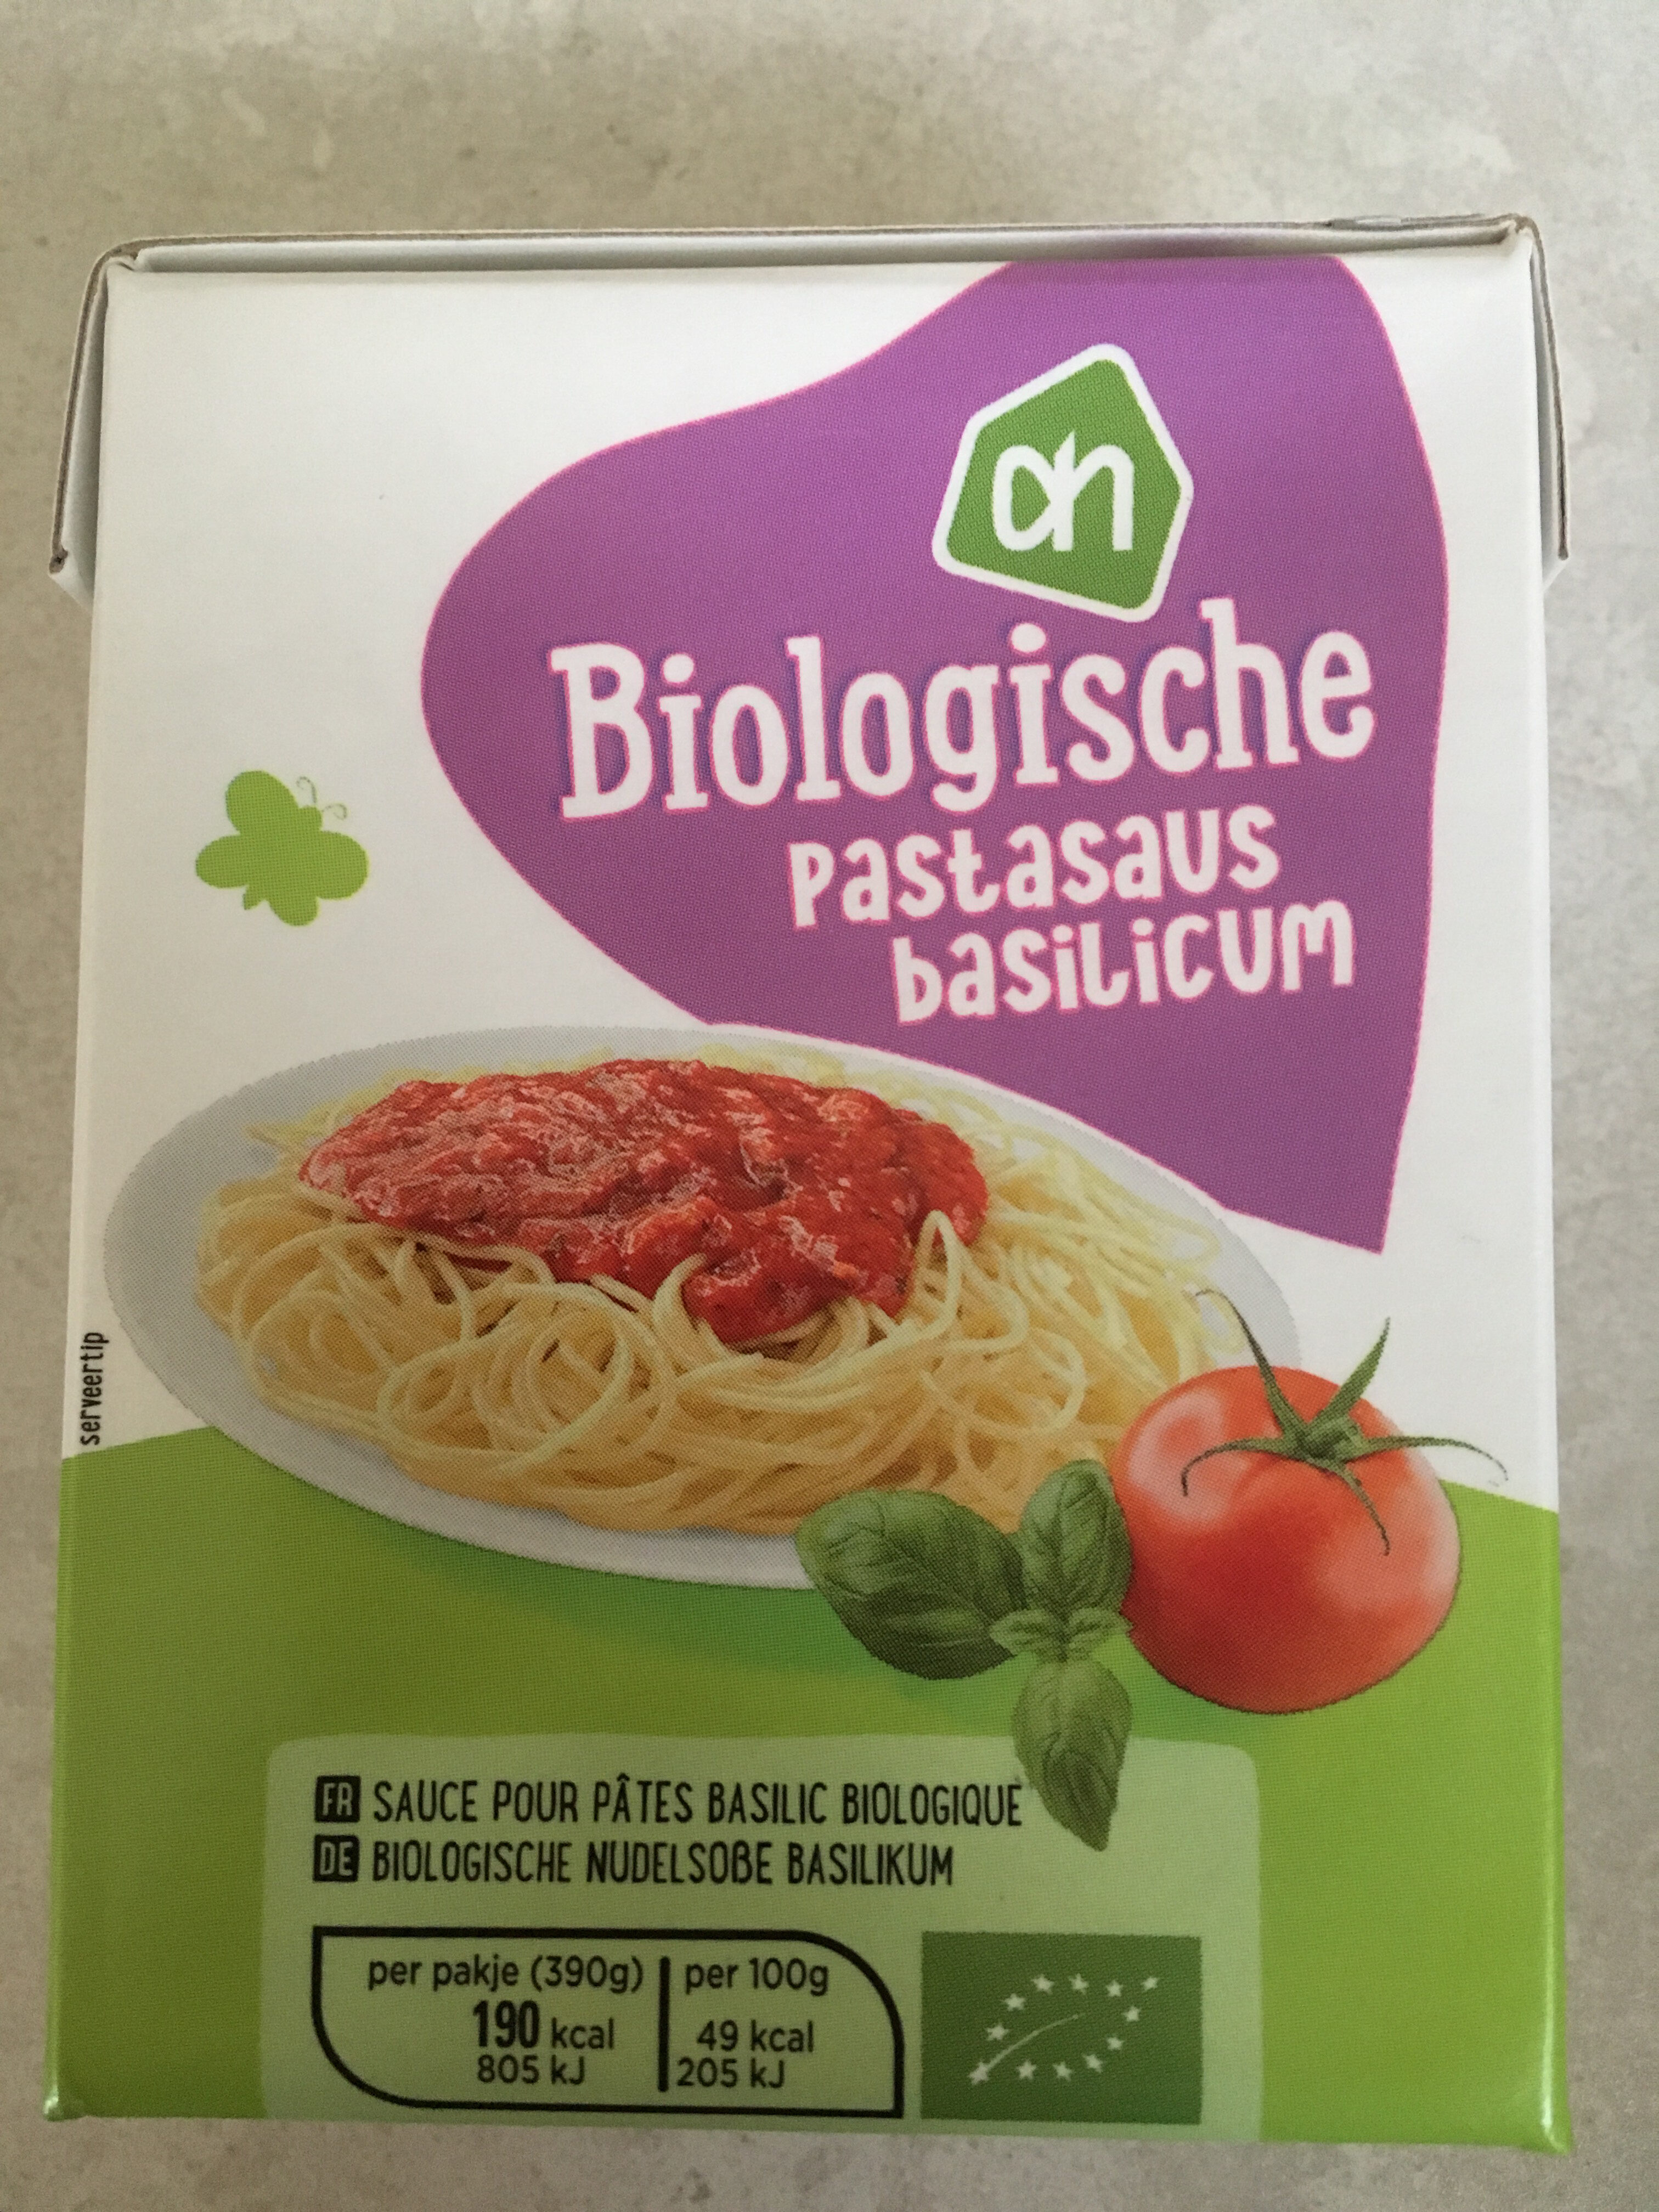 Biologische Pastasaus Basilicum - Product